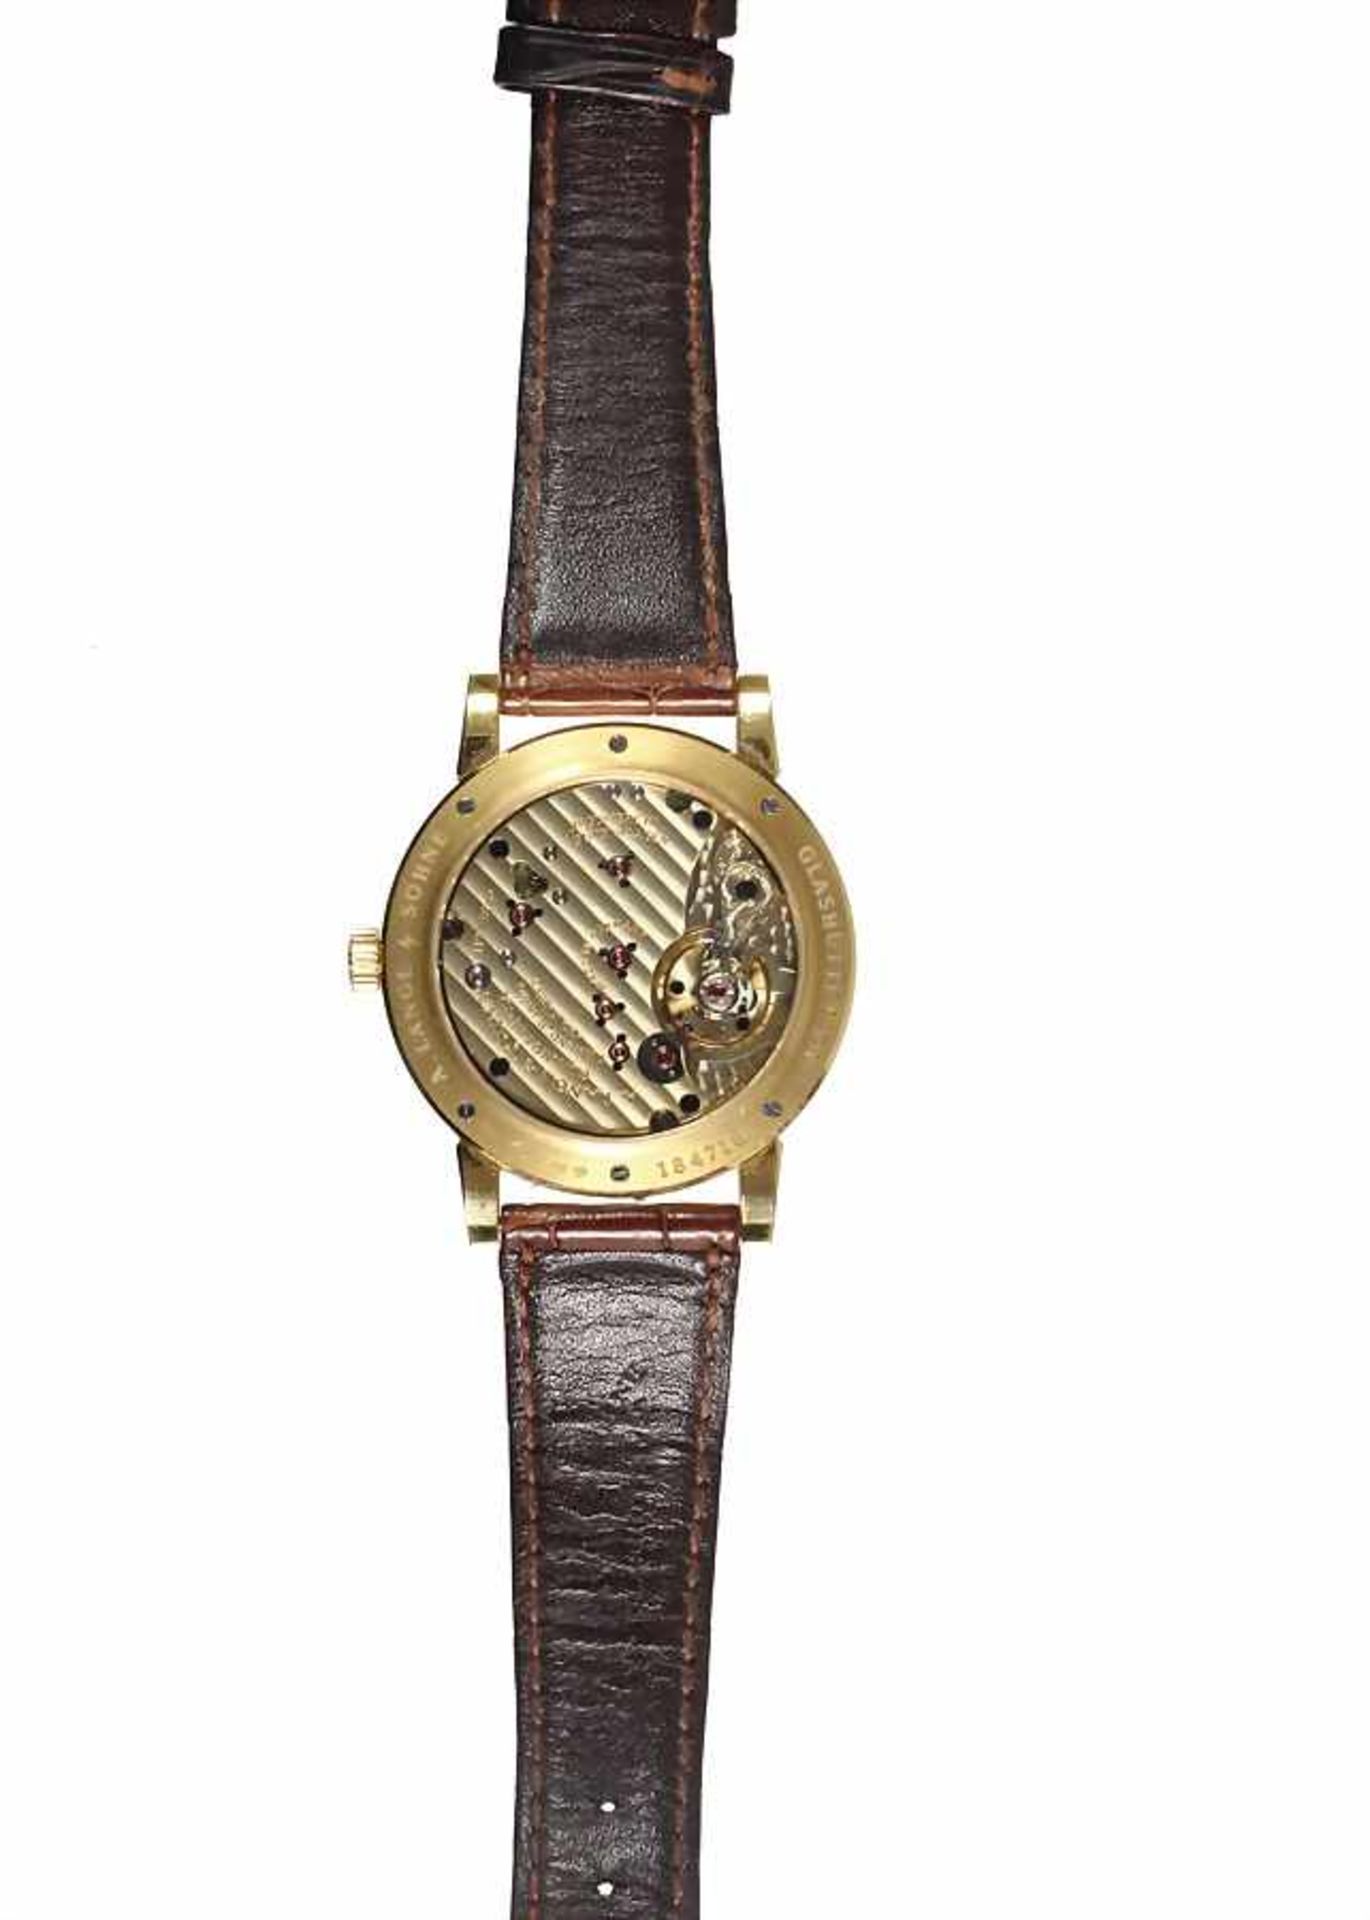 Herren-Armbanduhr, "A. LANGE & SÖHNE 1815" Glashütte, um 2000, Gelbgold 750/000, arab. Zahlen, kl. - Bild 2 aus 3